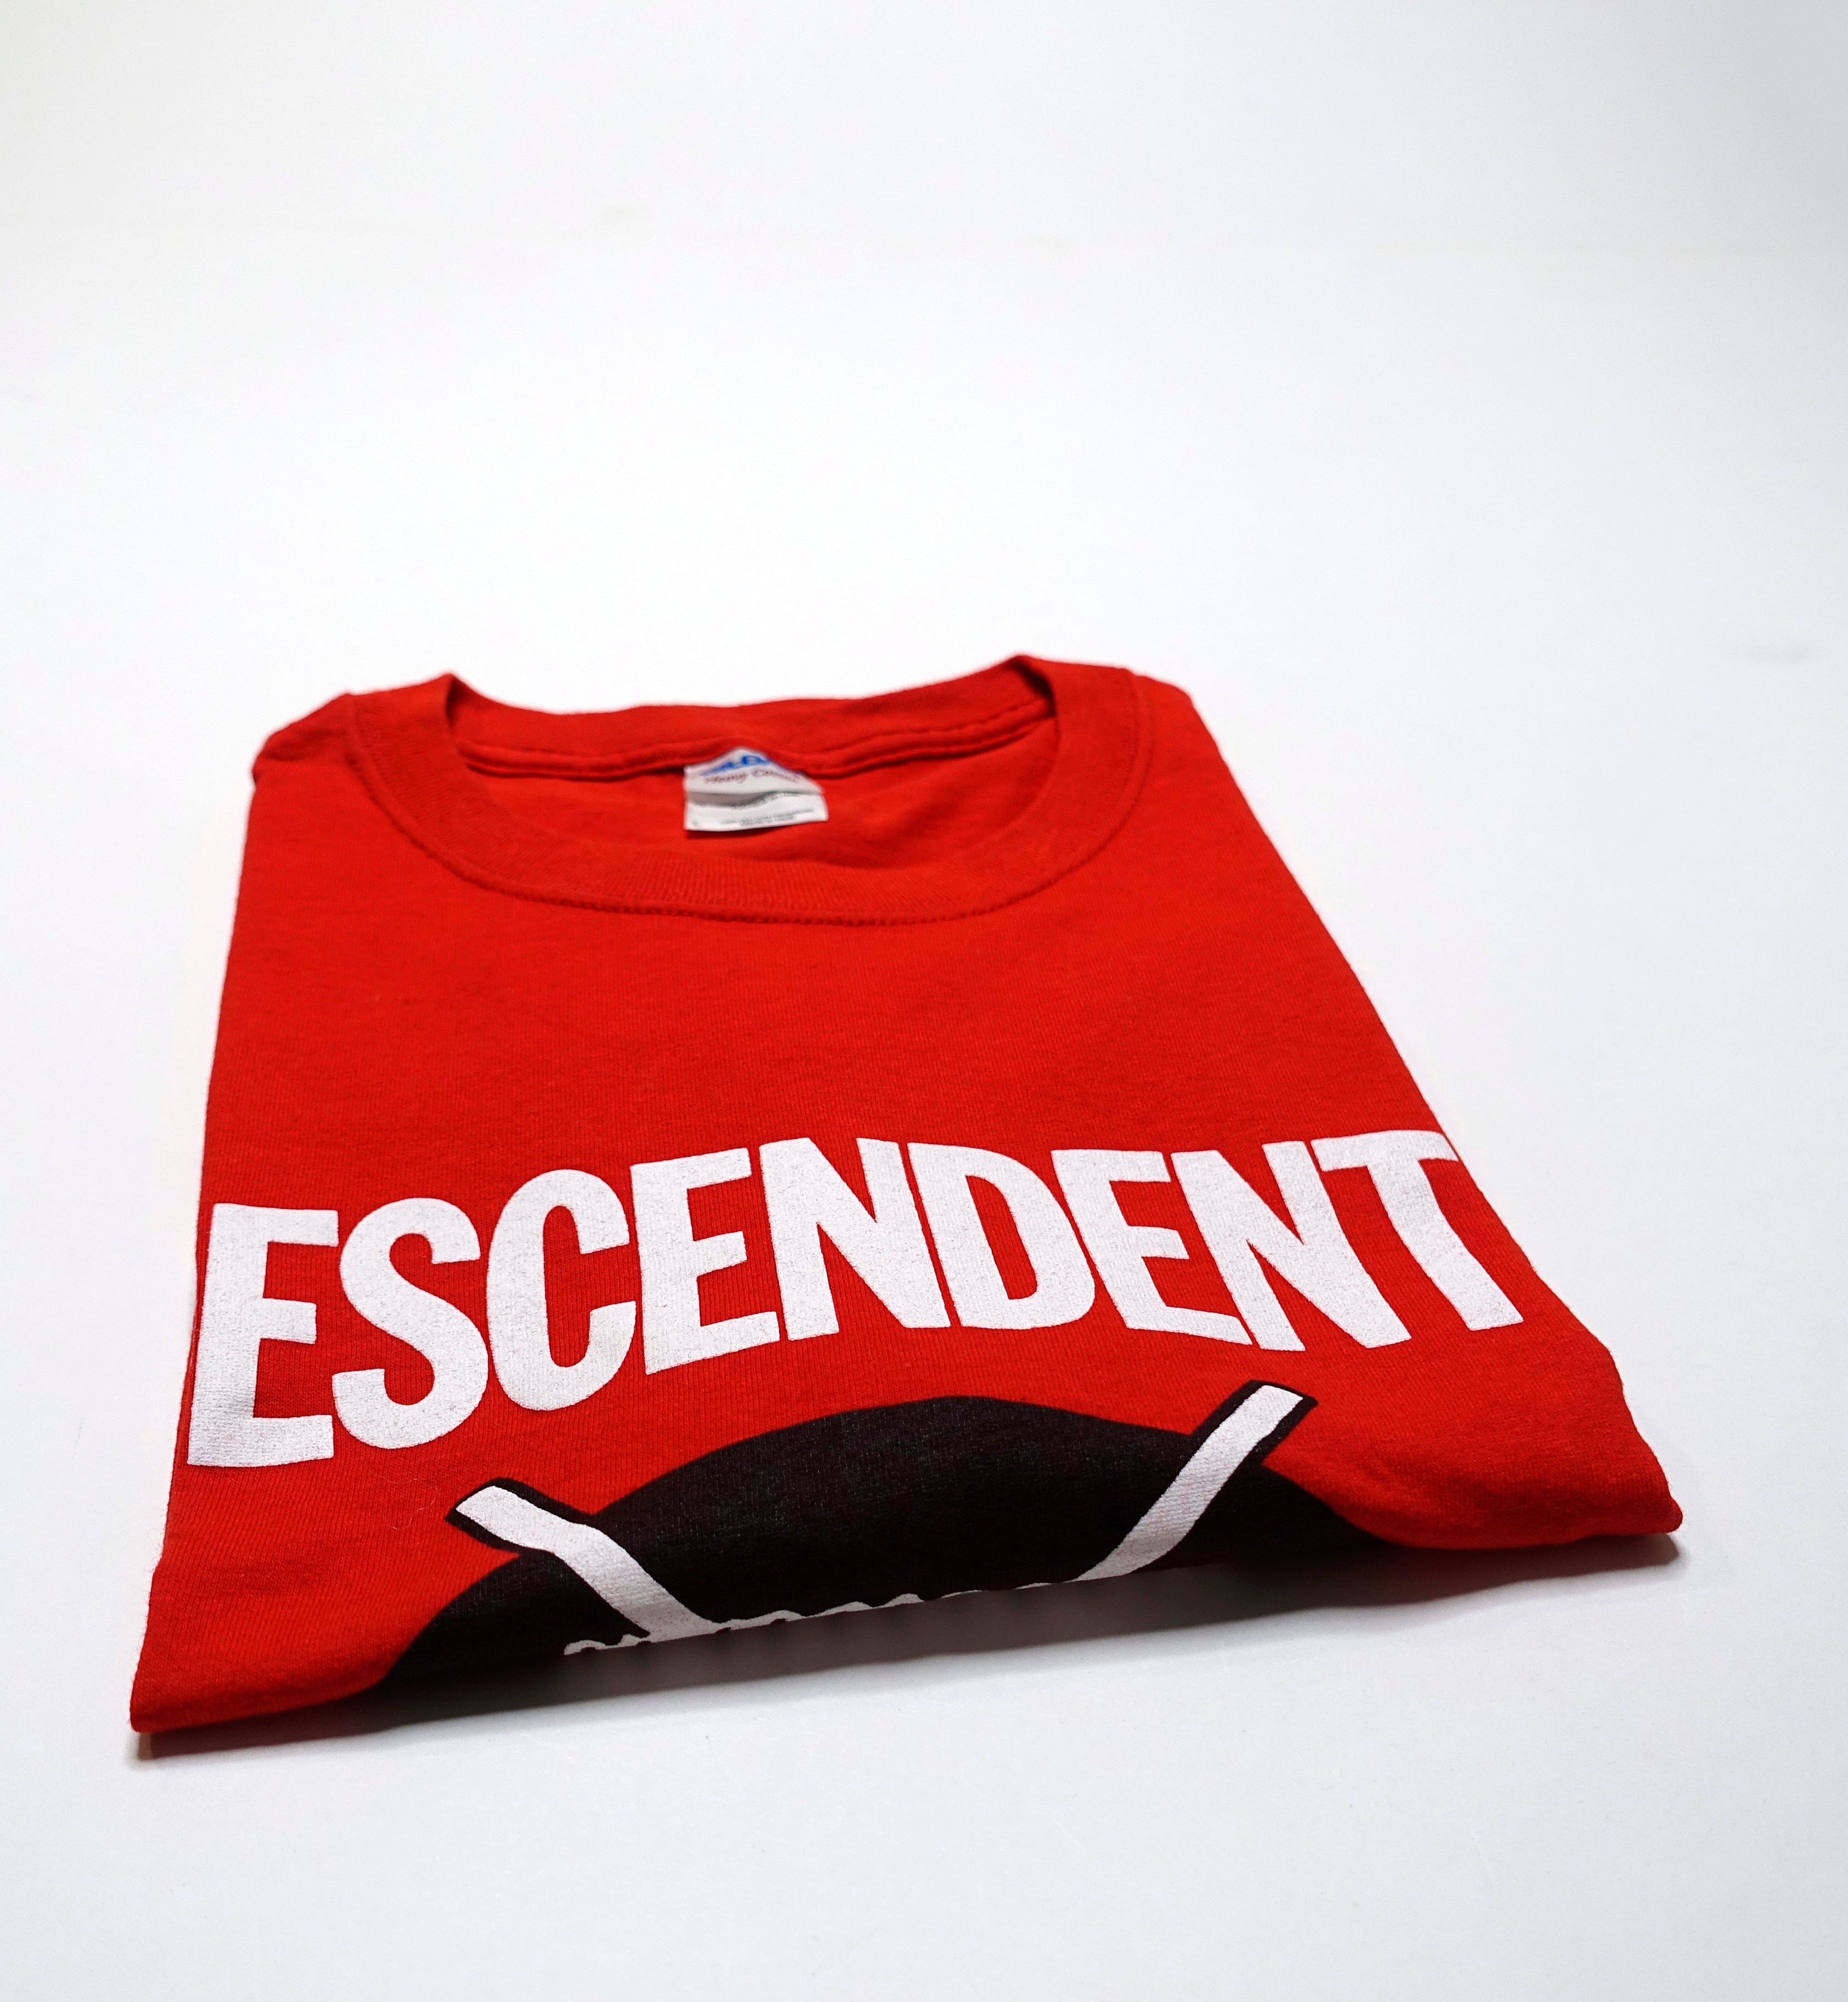 Descendents - Toronto 2012 Tour Shirt Size Large